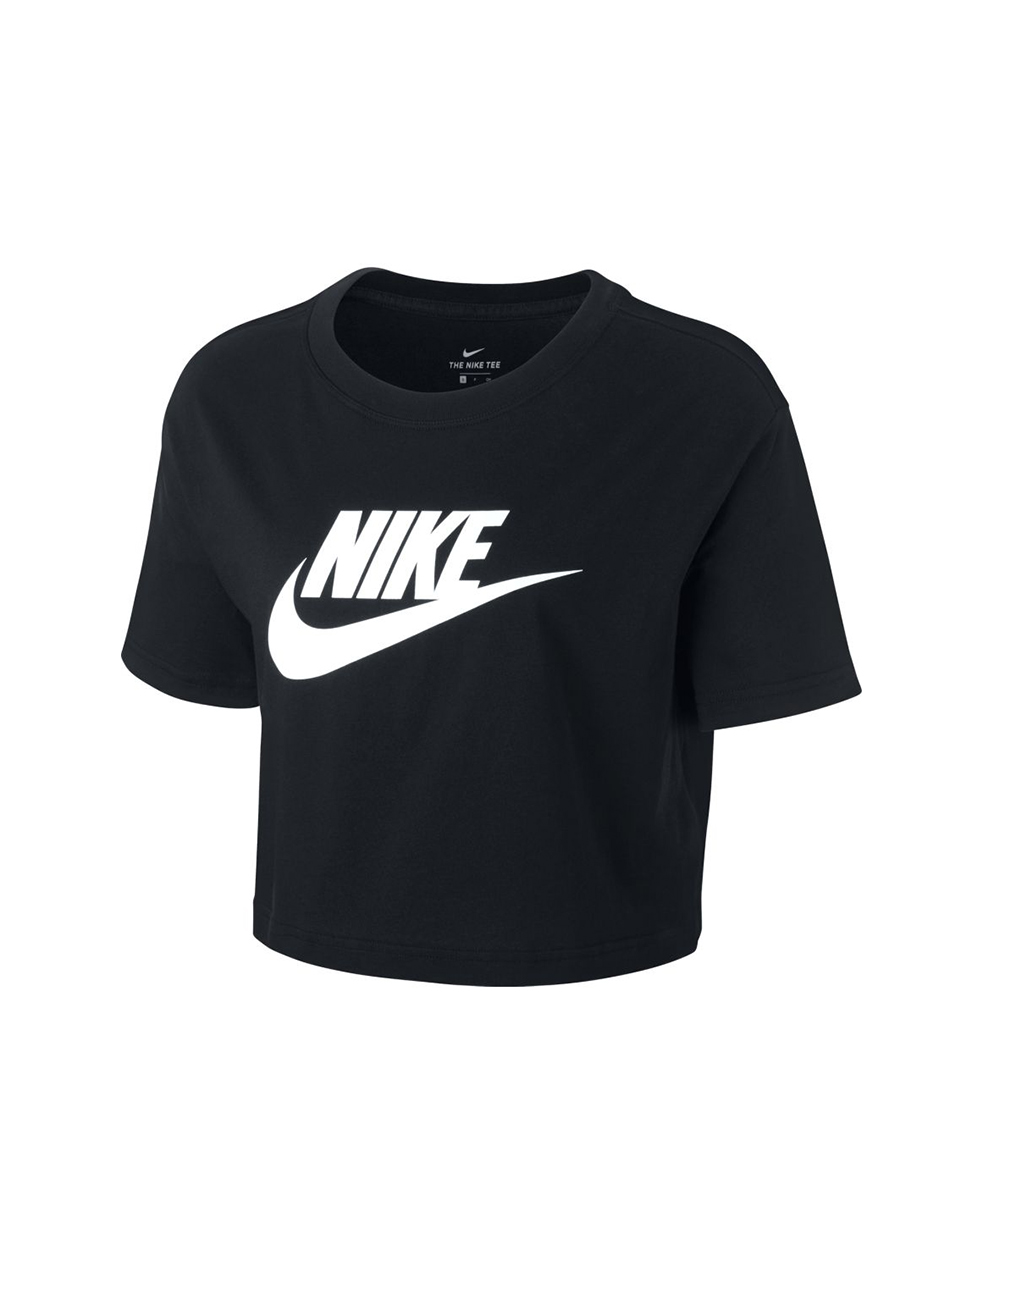 NIKE – Sportswear essential women’s cropped t-shirt